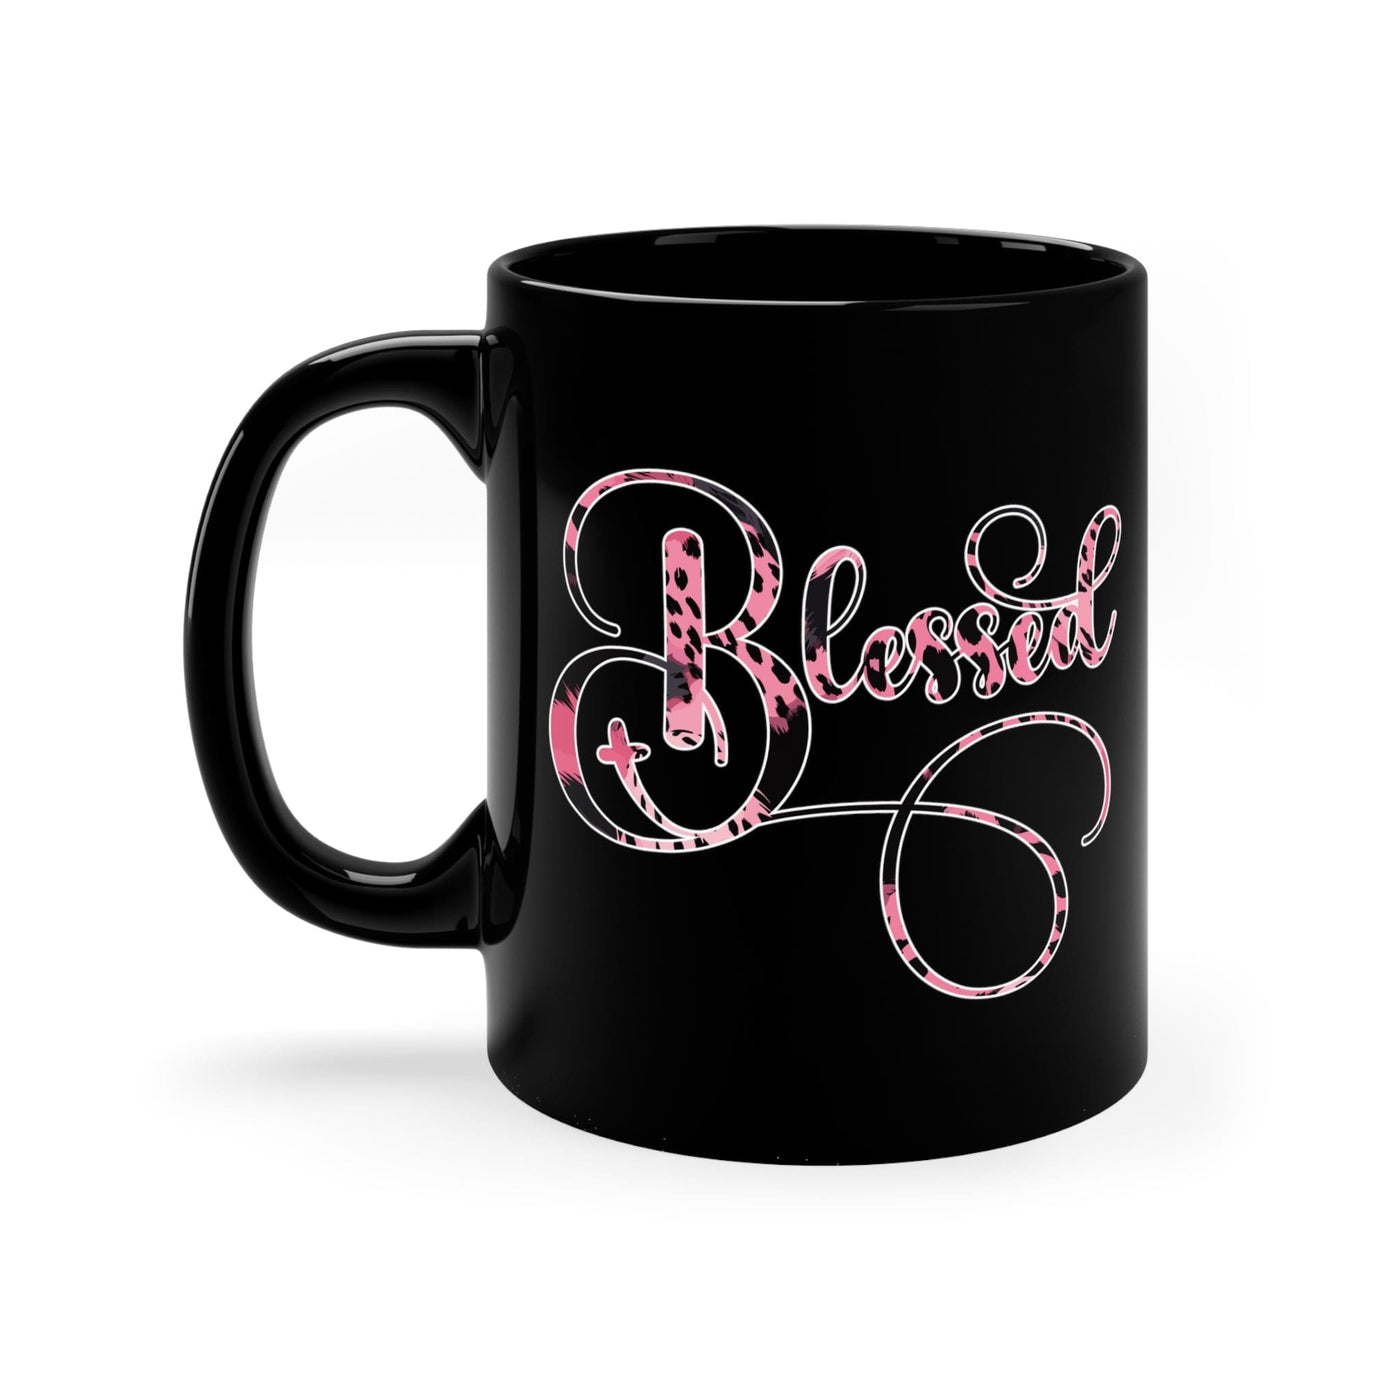 Black Ceramic Mug - 11oz Blessed Pink And Patterned Graphic Illustration